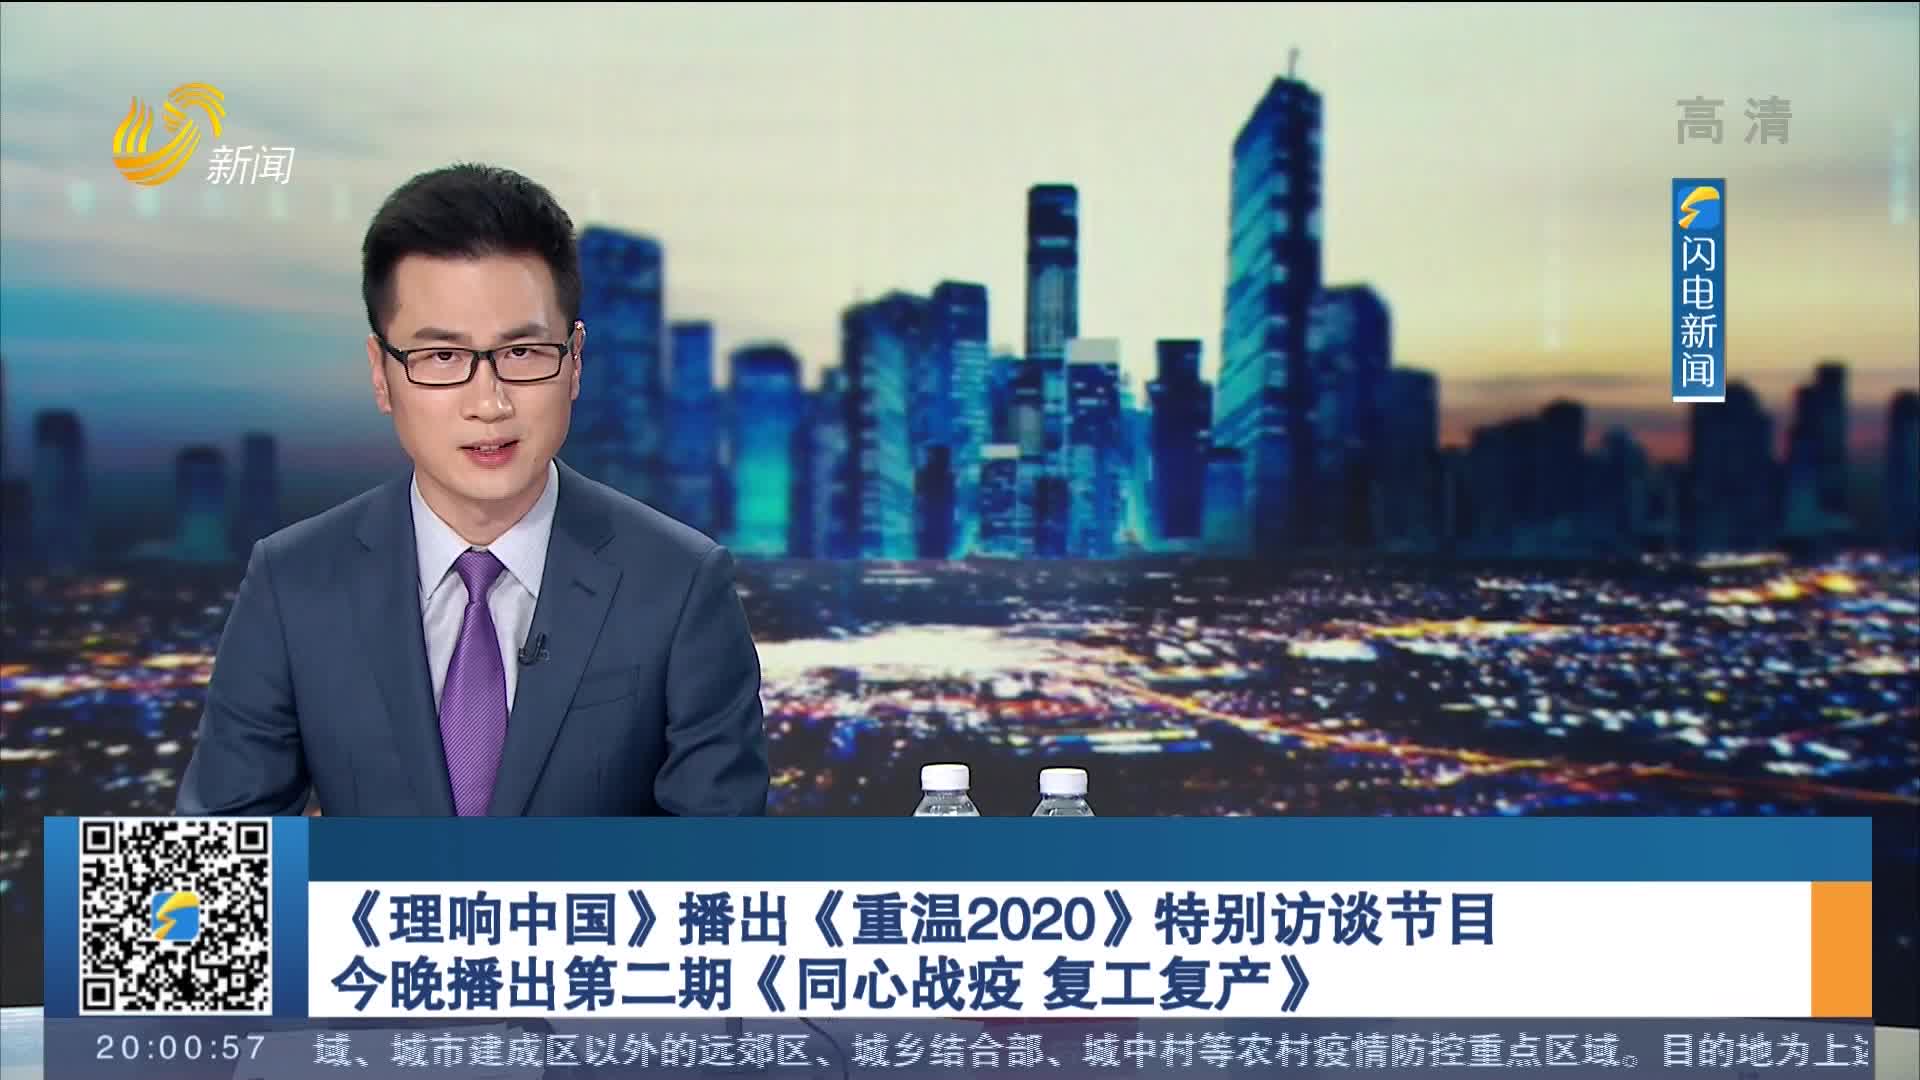 《理响中国》播出《重温2020》特别访谈节目 今晚播出第二期《同心战疫 复工复产》